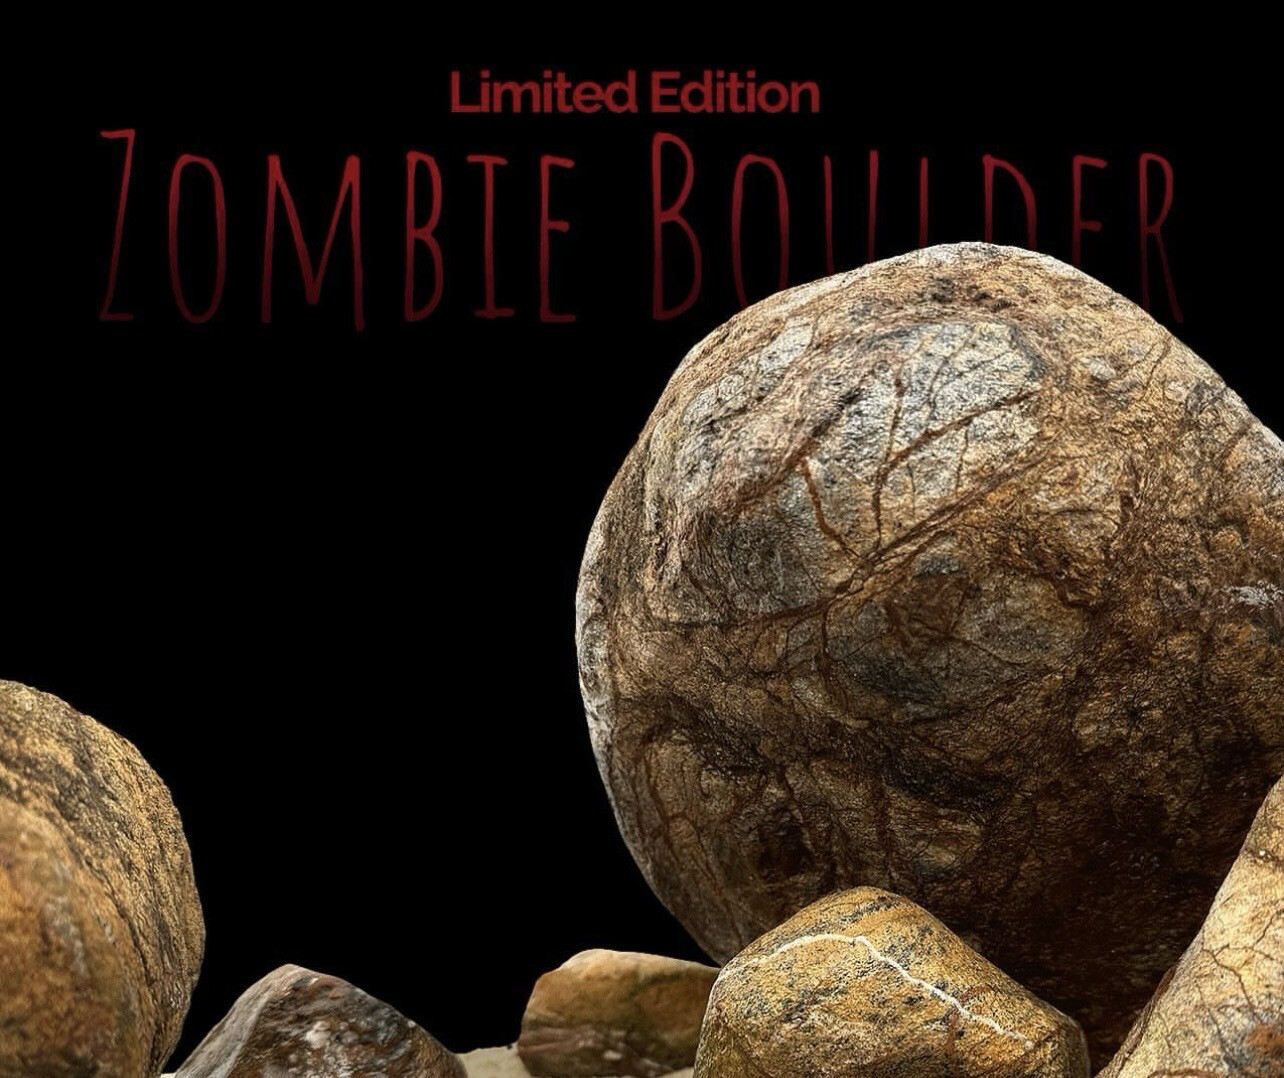 Zombie Boulder kg 